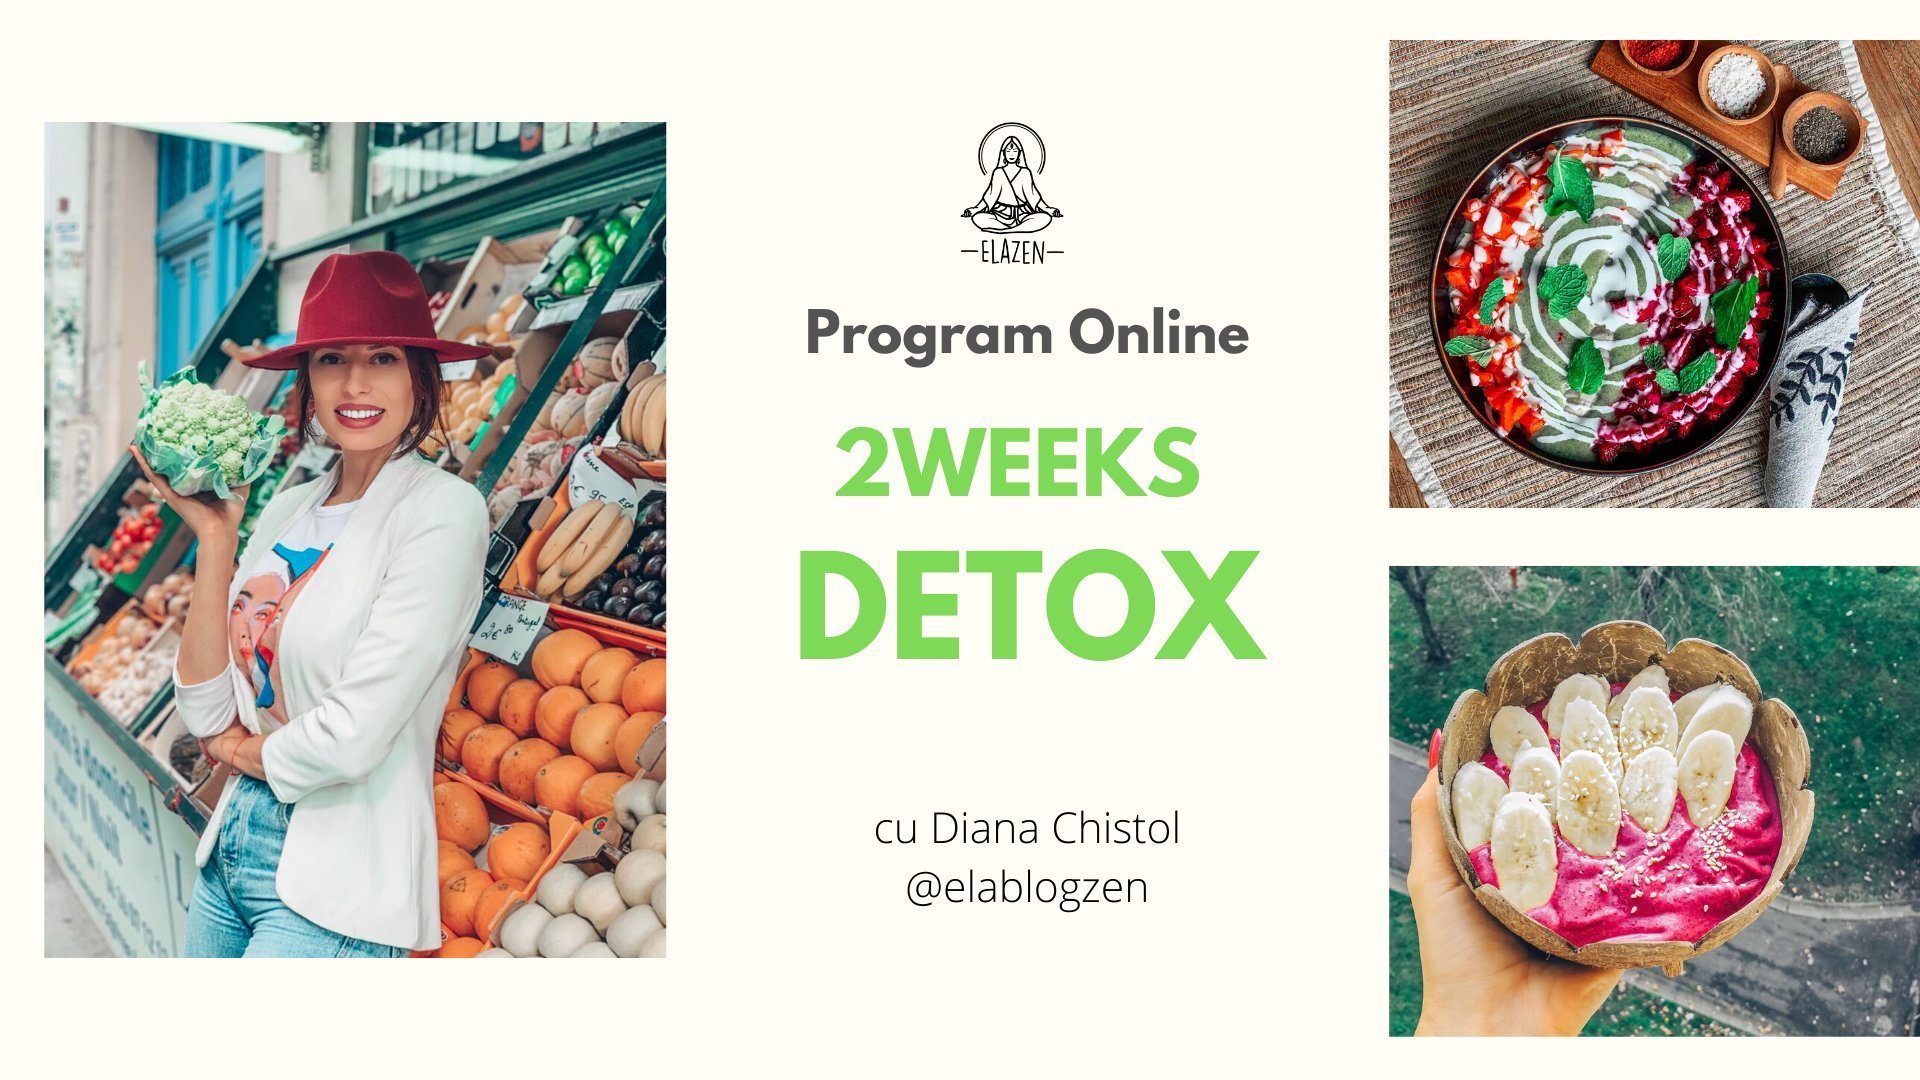 Detox1 cu Diana Chistol - Program Online de Detox | Editia 14